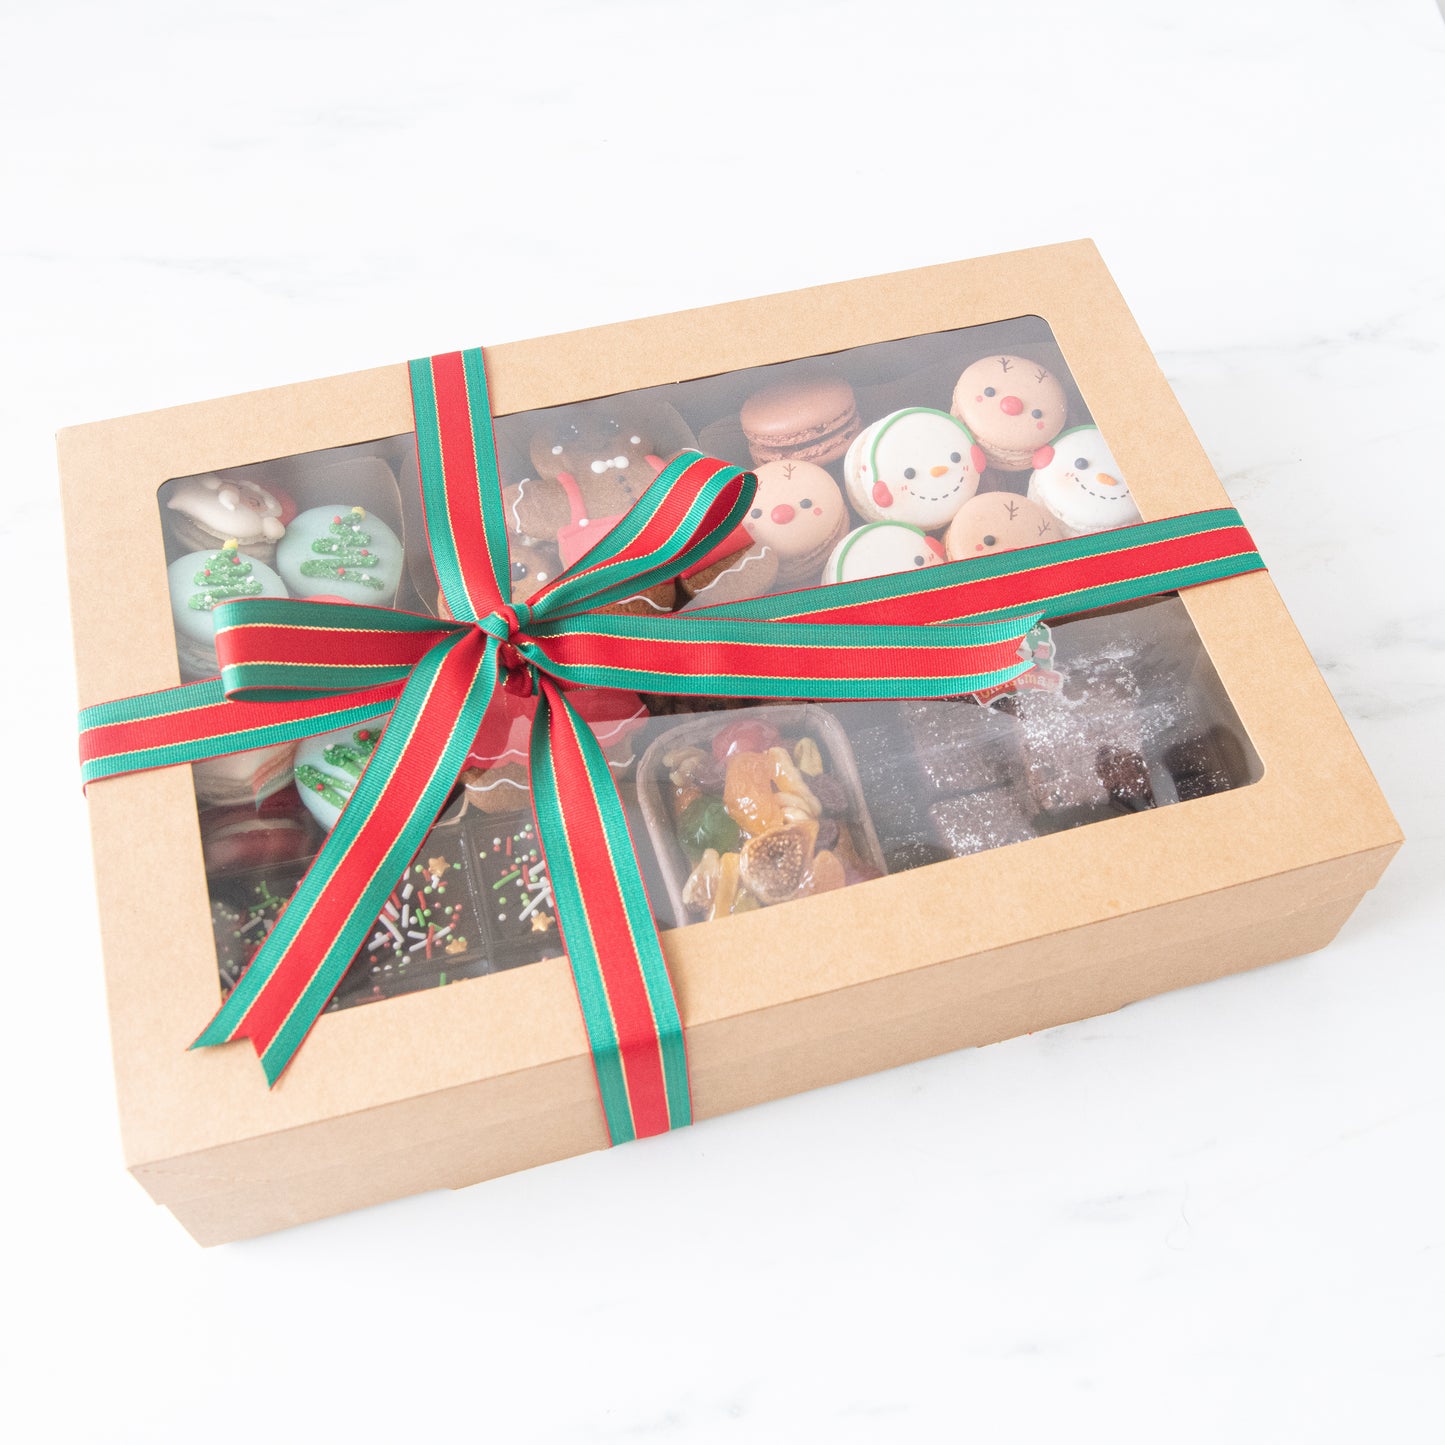 Ho ho ho! | Merry Christmas | A Sweet Present | $128 Nett